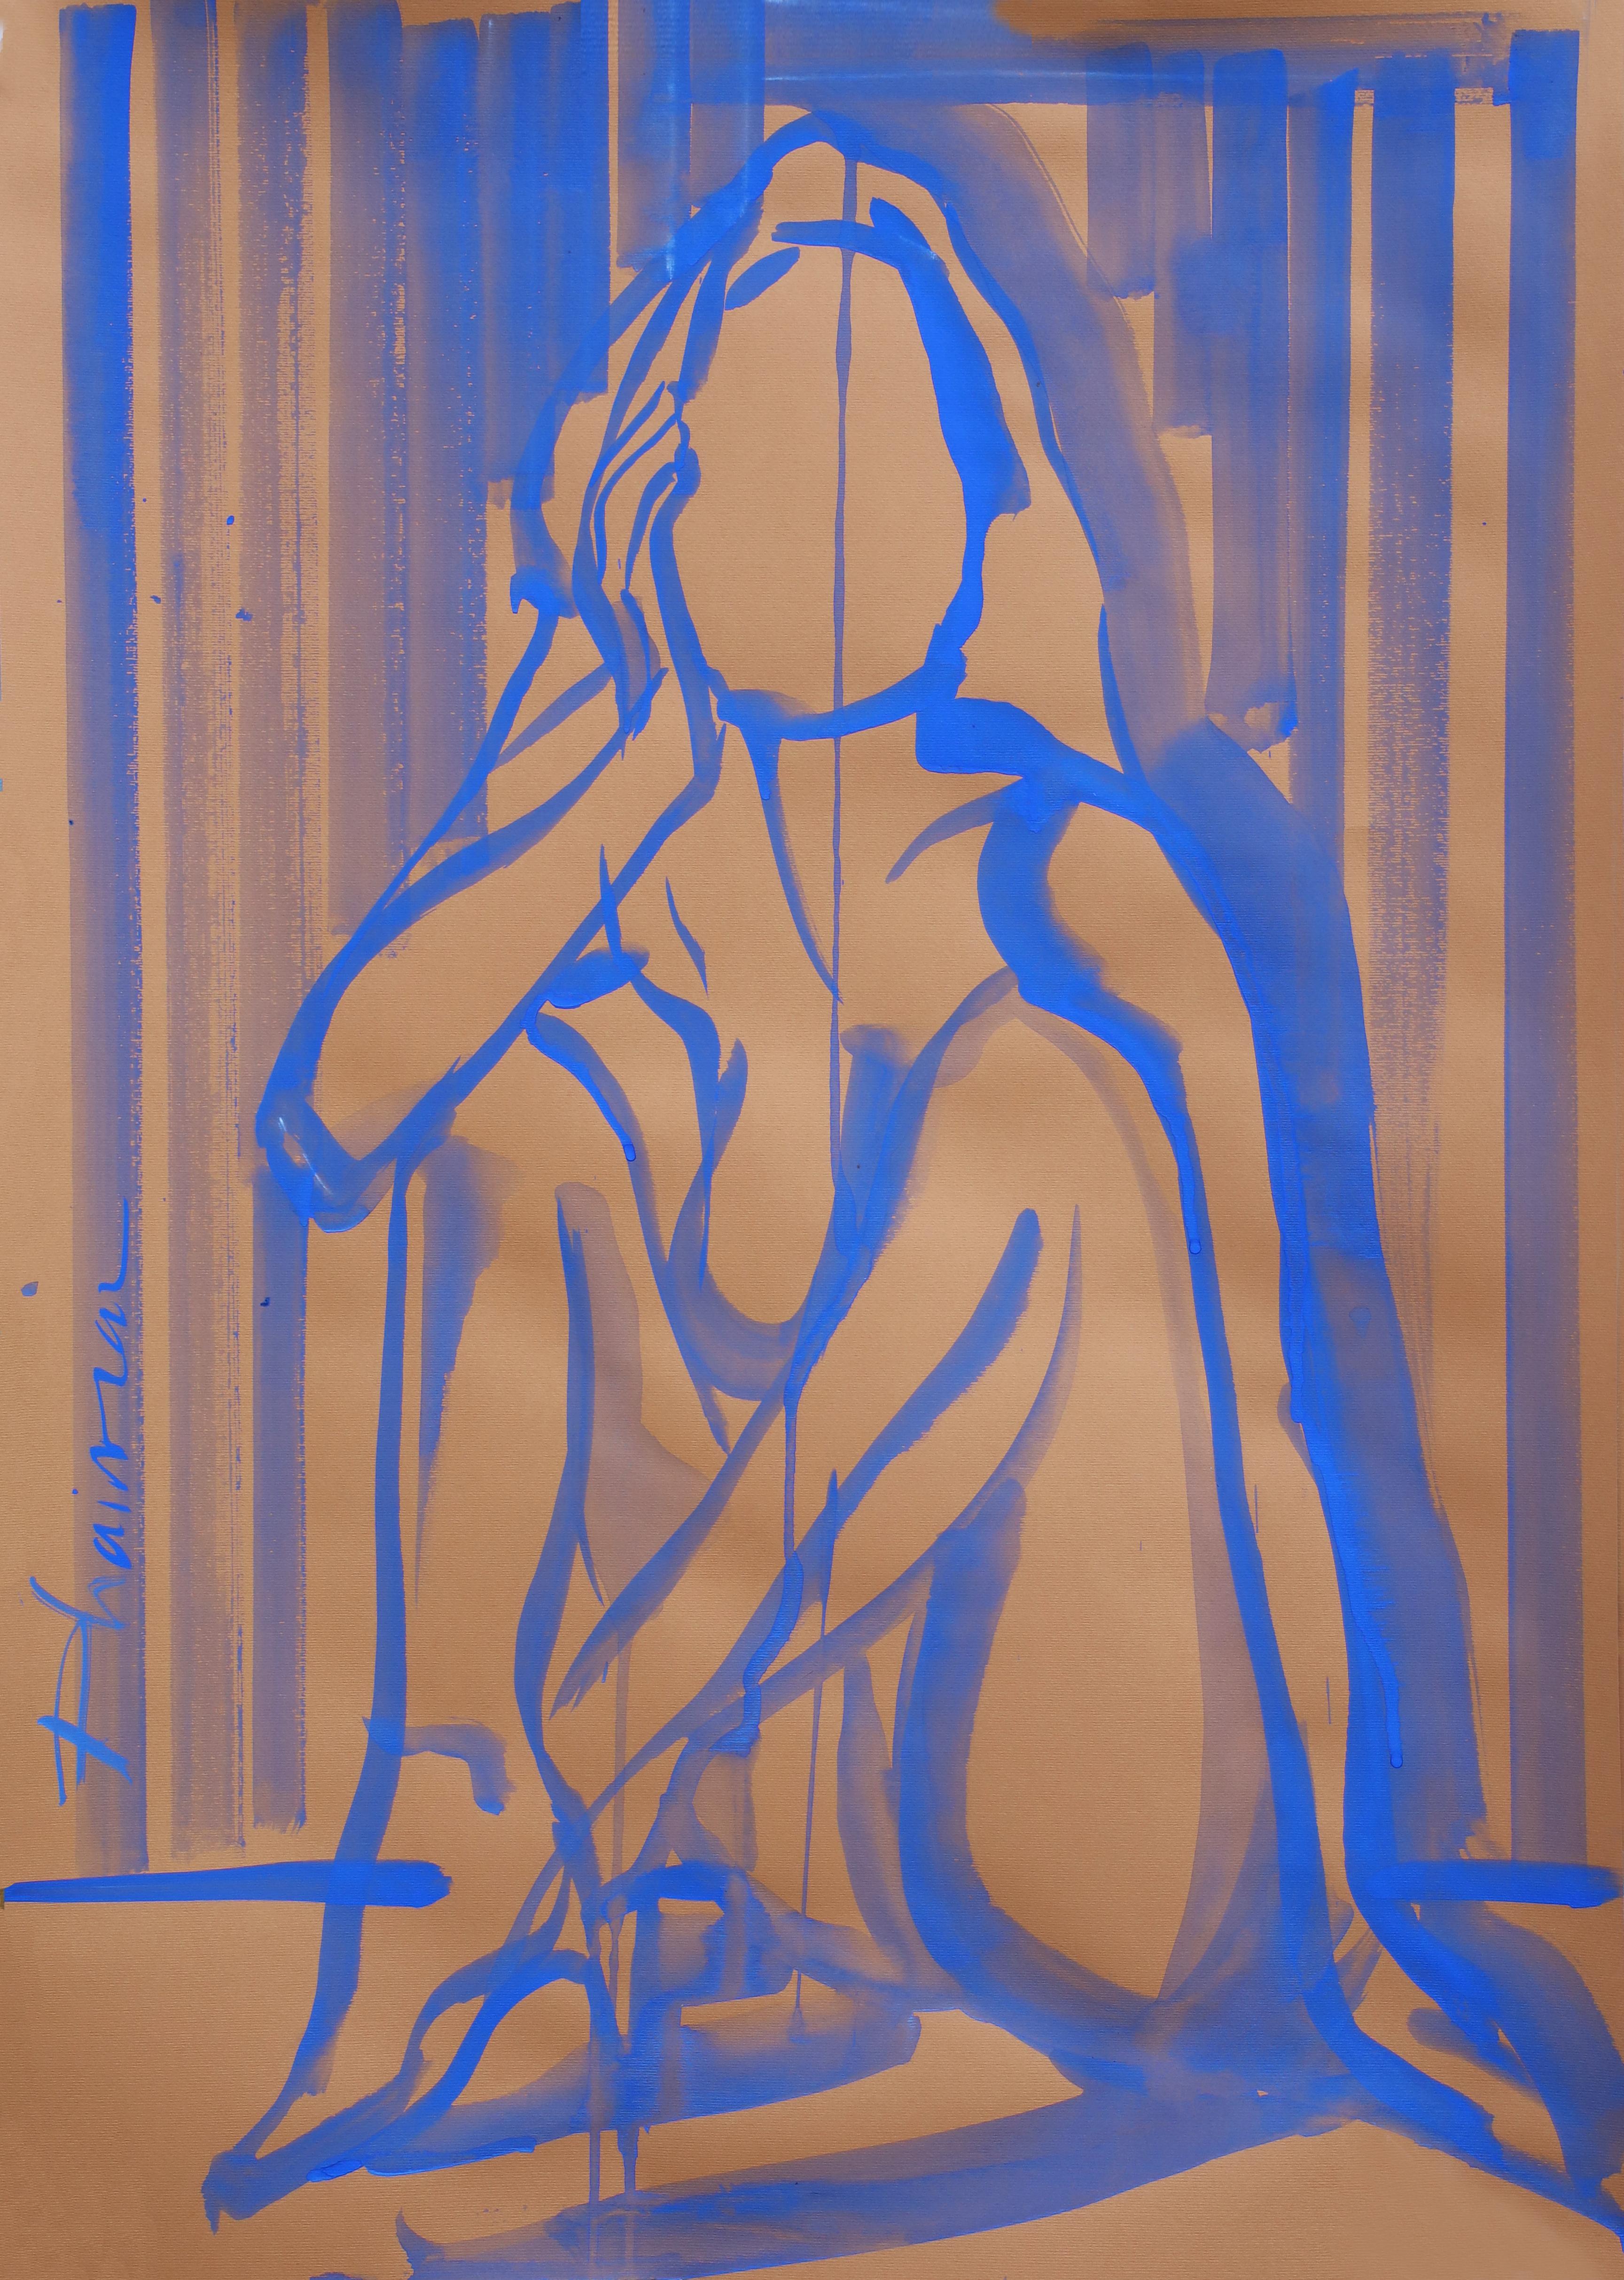 Self Love, nu, tempera outremer sur papier coloré, inspiré par Matisse.
Fait partie de la série Nude in Interior.
Une ligne expressive,  révélant l'essentiel du corps sensuel de la femme.
Livré roulé dans un tube, directement depuis le studio de